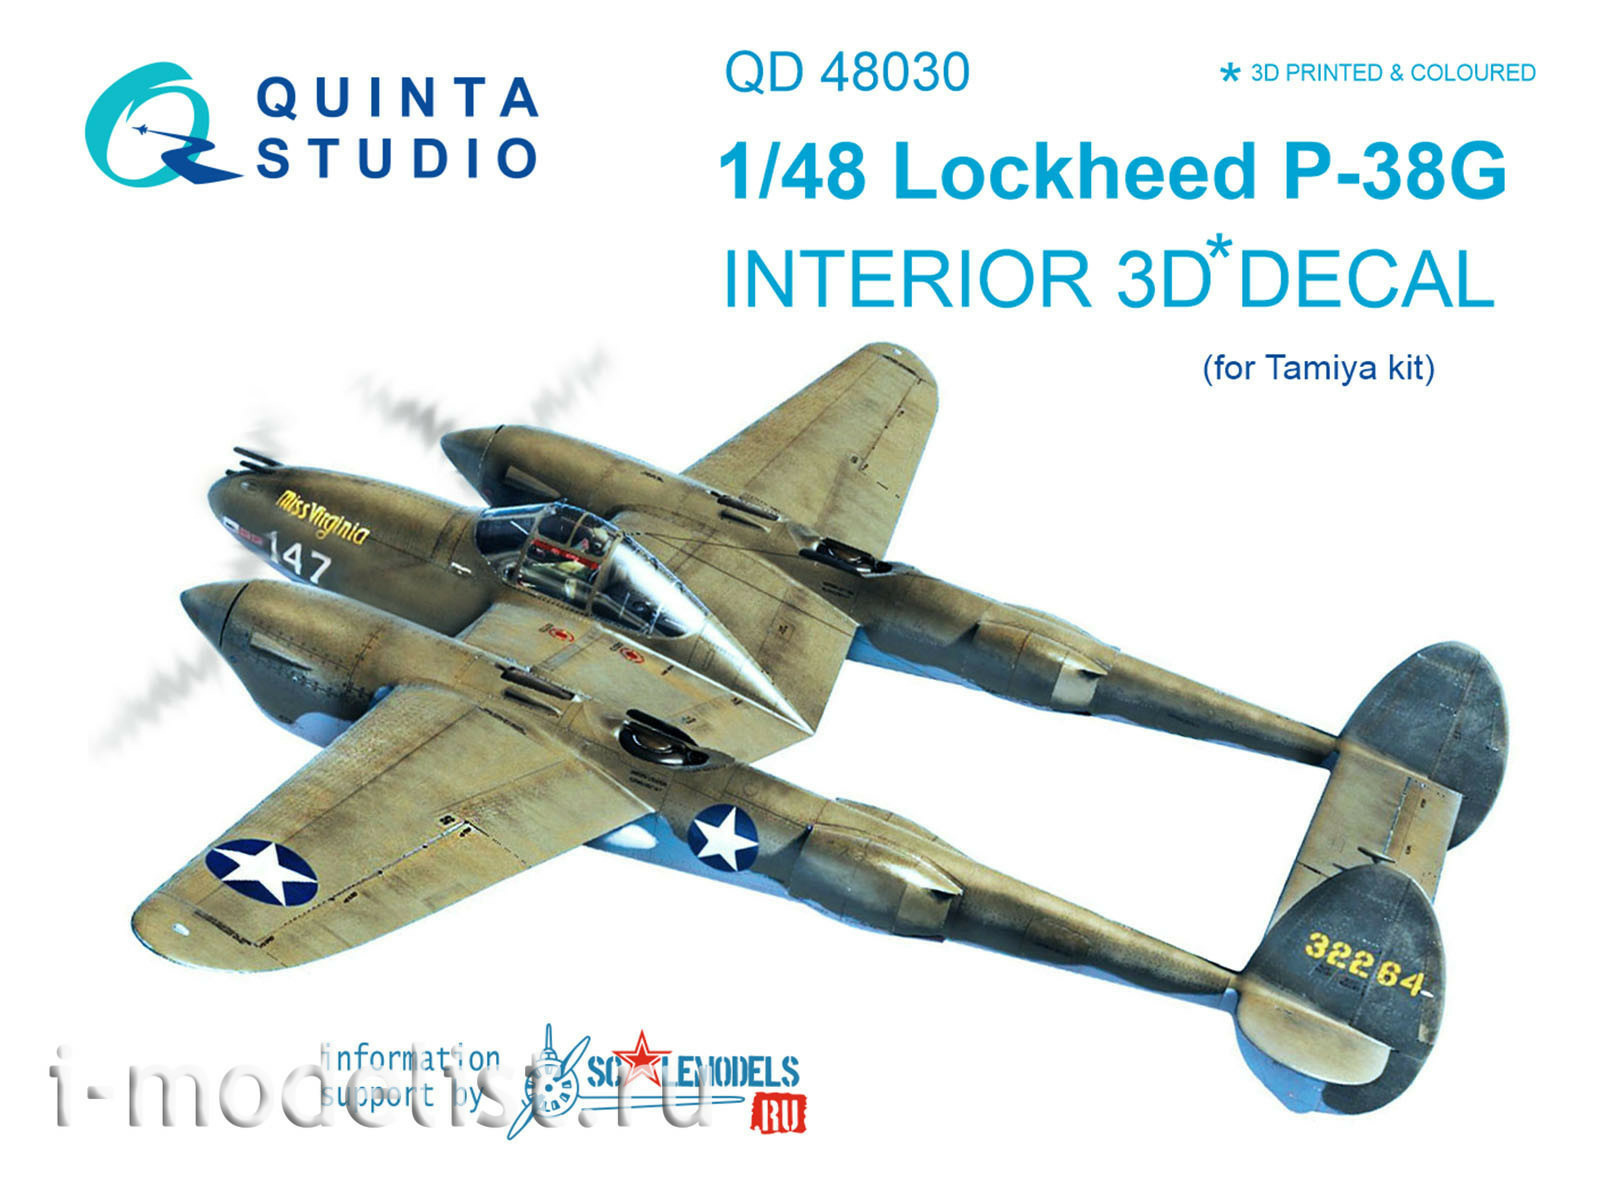 QD48030 Quinta Studio 1/48 3D Декаль интерьера кабины P-38G (для модели Tamiya)